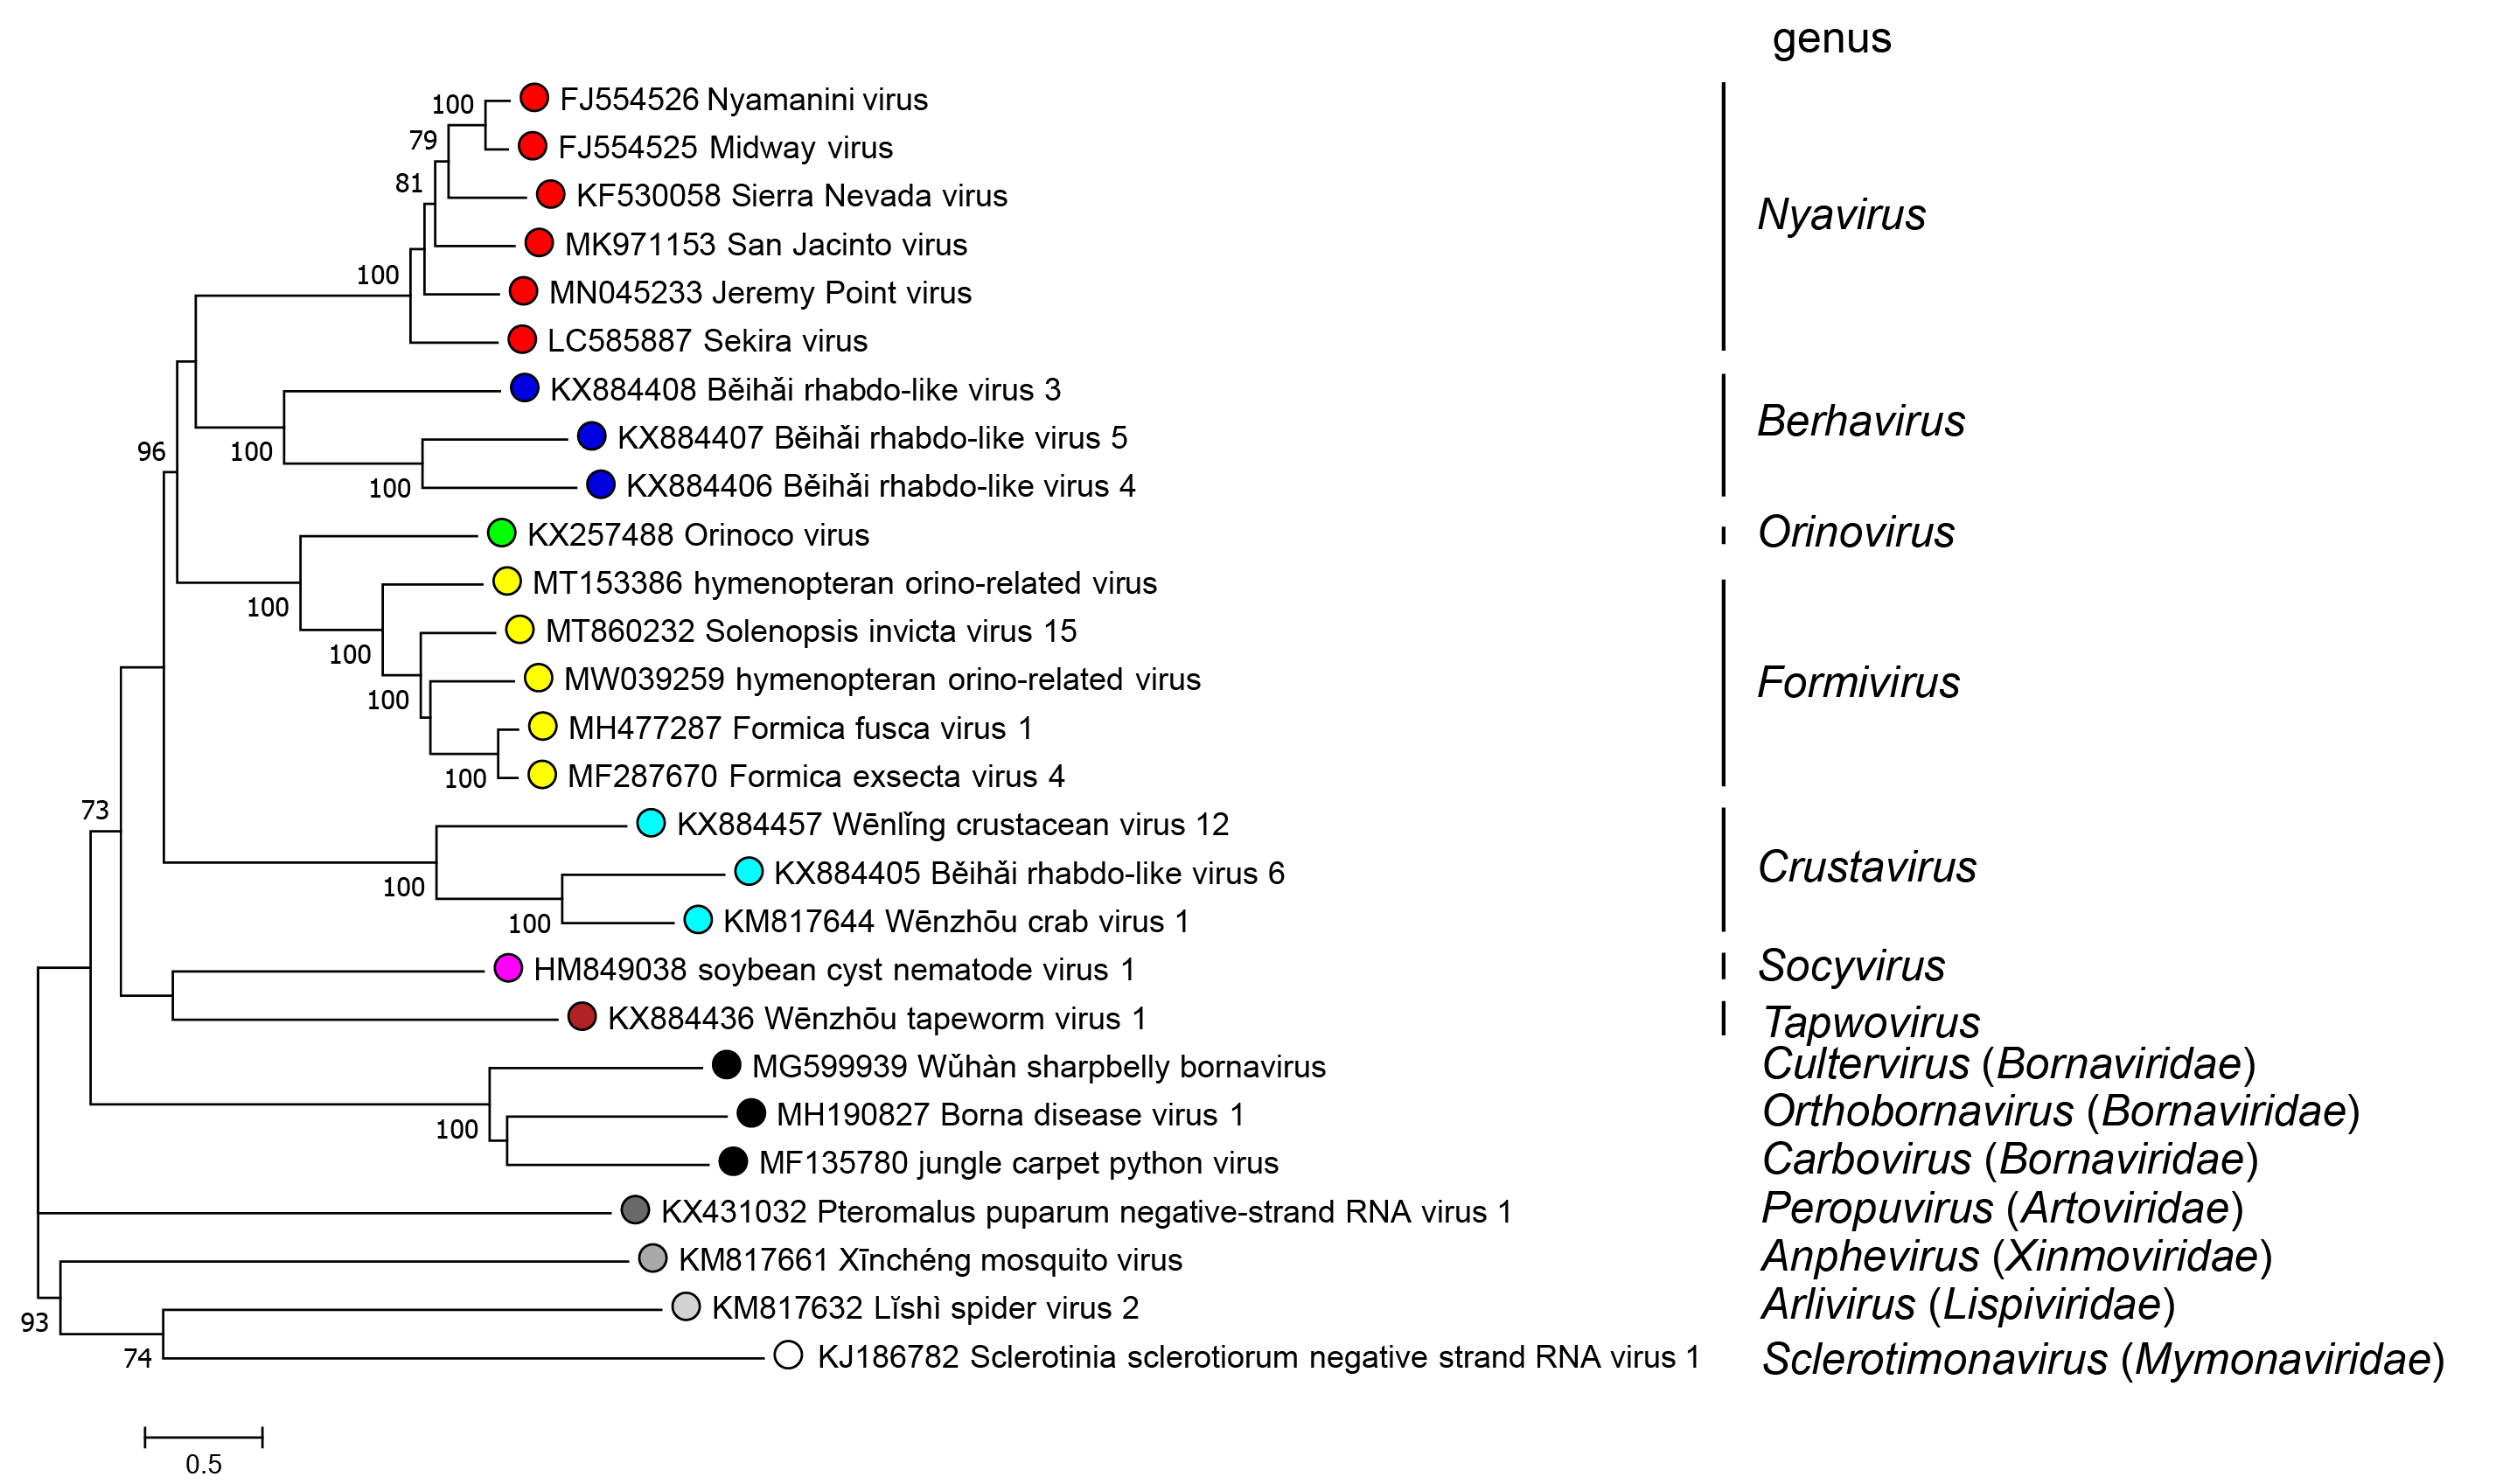 Phylogenetic tree Nyamiviridae